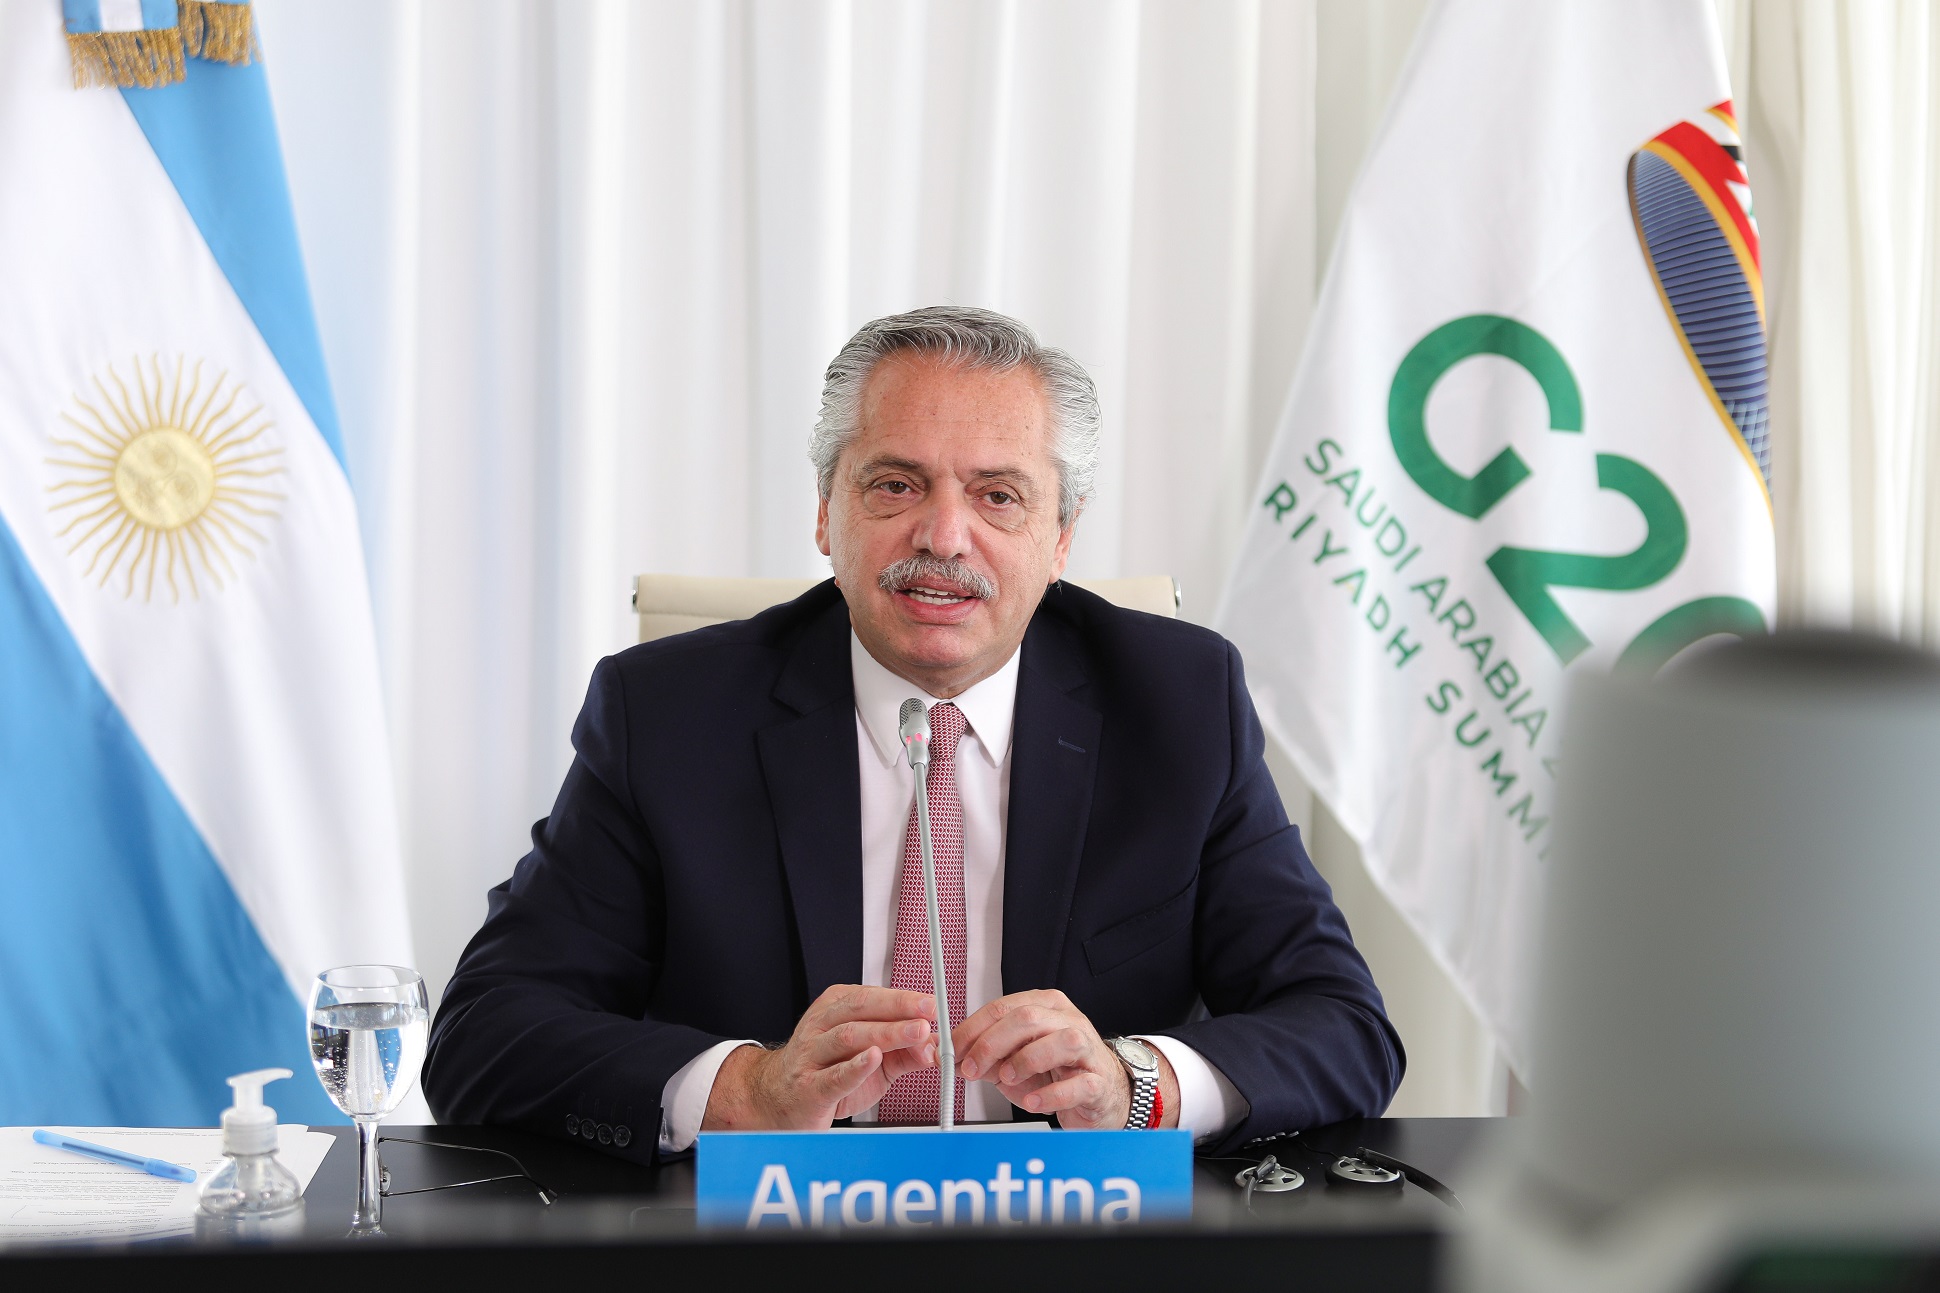 ”La Argentina está comprometida con una agenda de transición justa hacia el desarrollo integral y sostenible”, dijo hoy el Presidente en el G20 